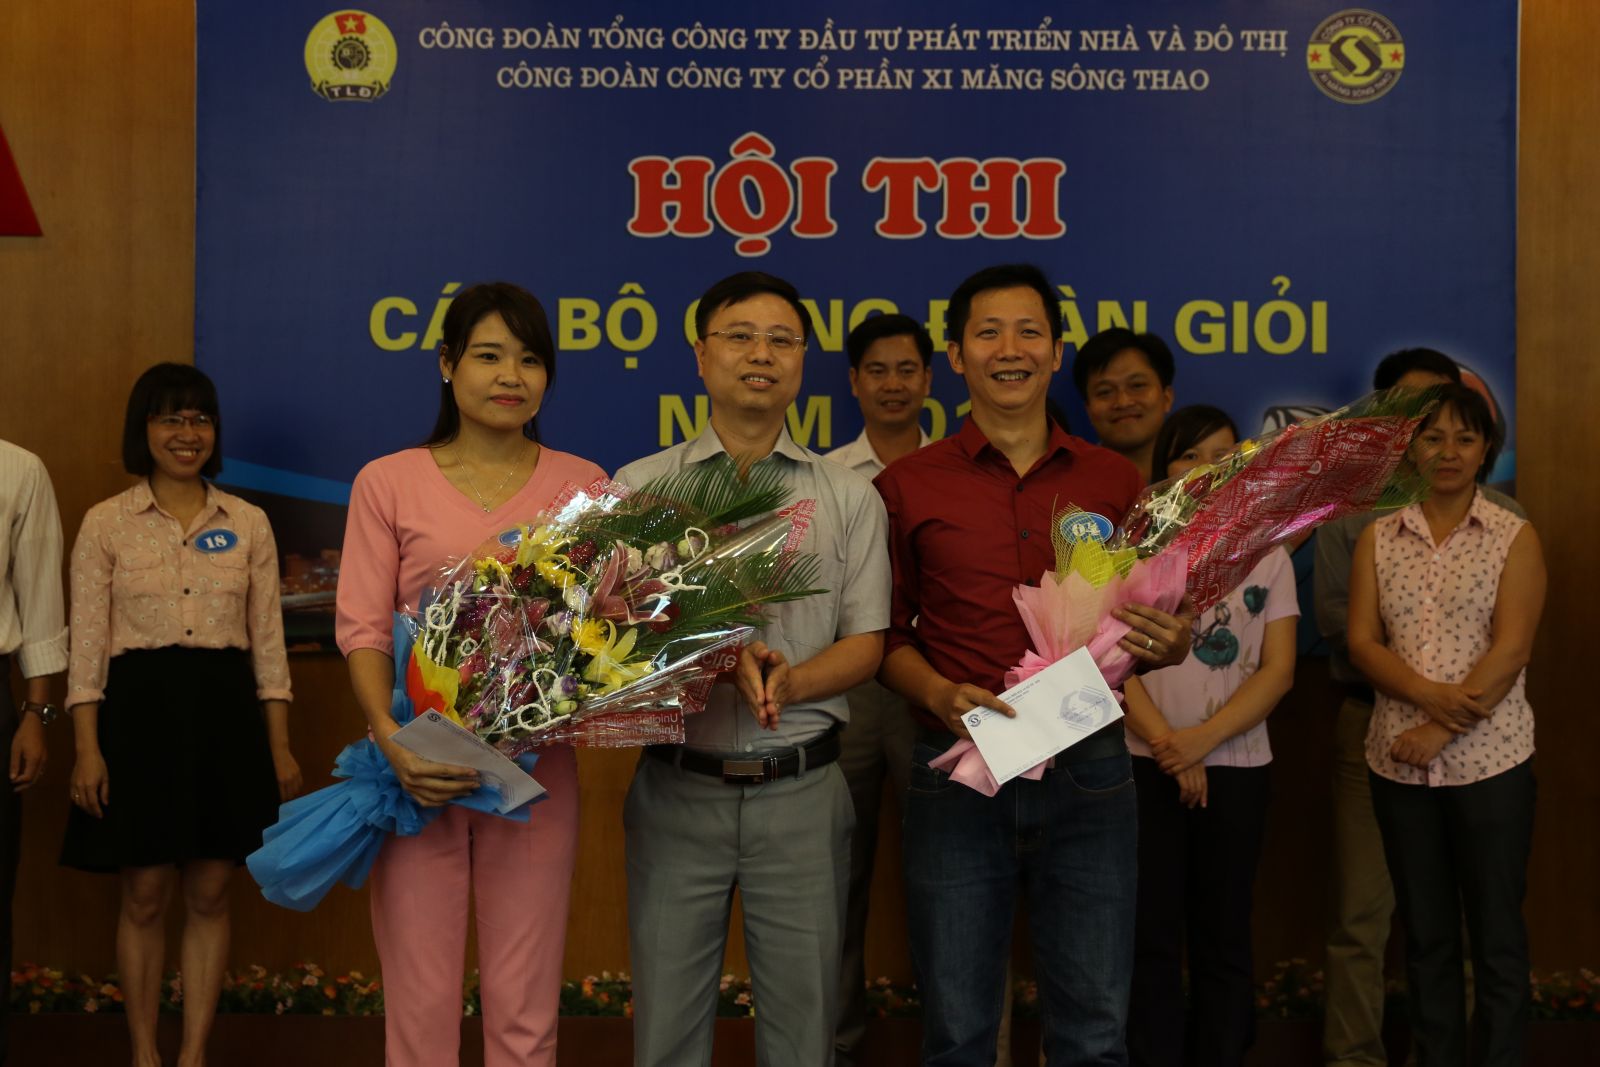 Đ/c Phạm Thành Duy, Phó chủ tịch Công đoàn Công ty trao giải cho cacsc thí sinh đạt giải nhì